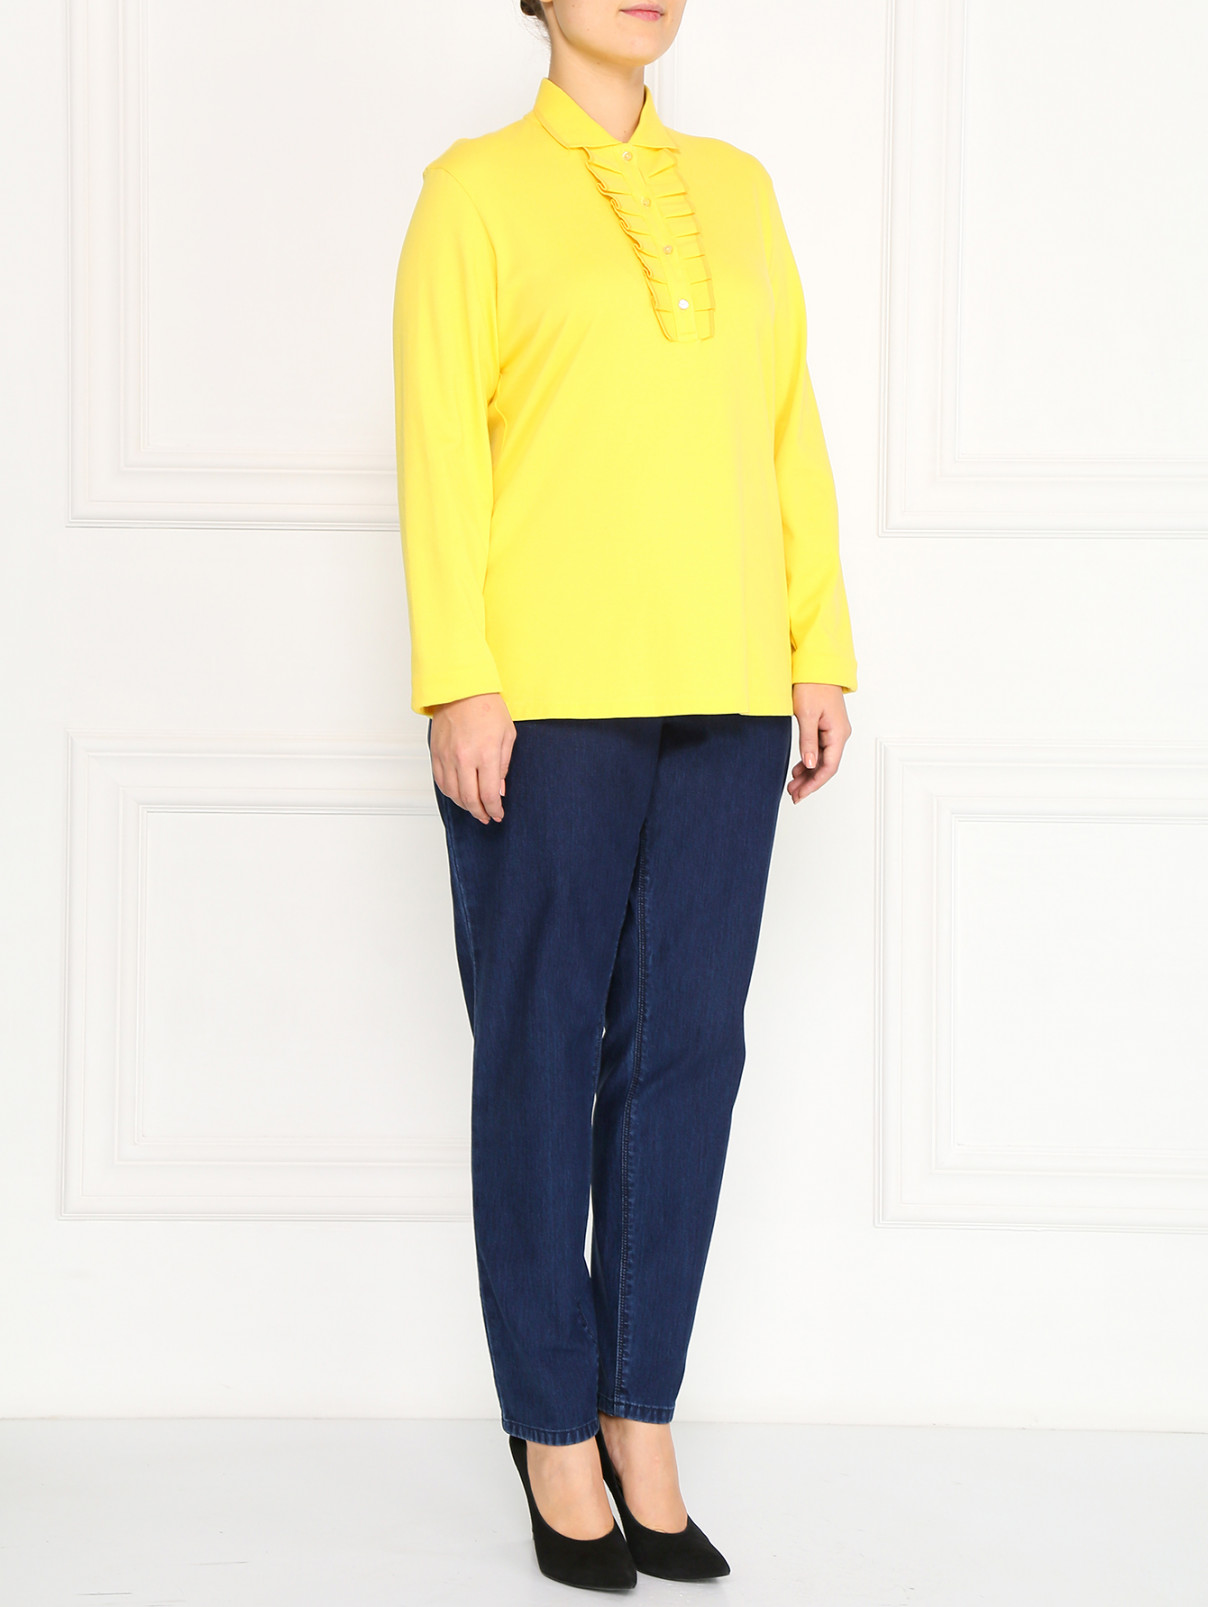 Трикотажная блуза из хлопка с декоративным жабо Marina Sport  –  Модель Общий вид  – Цвет:  Желтый